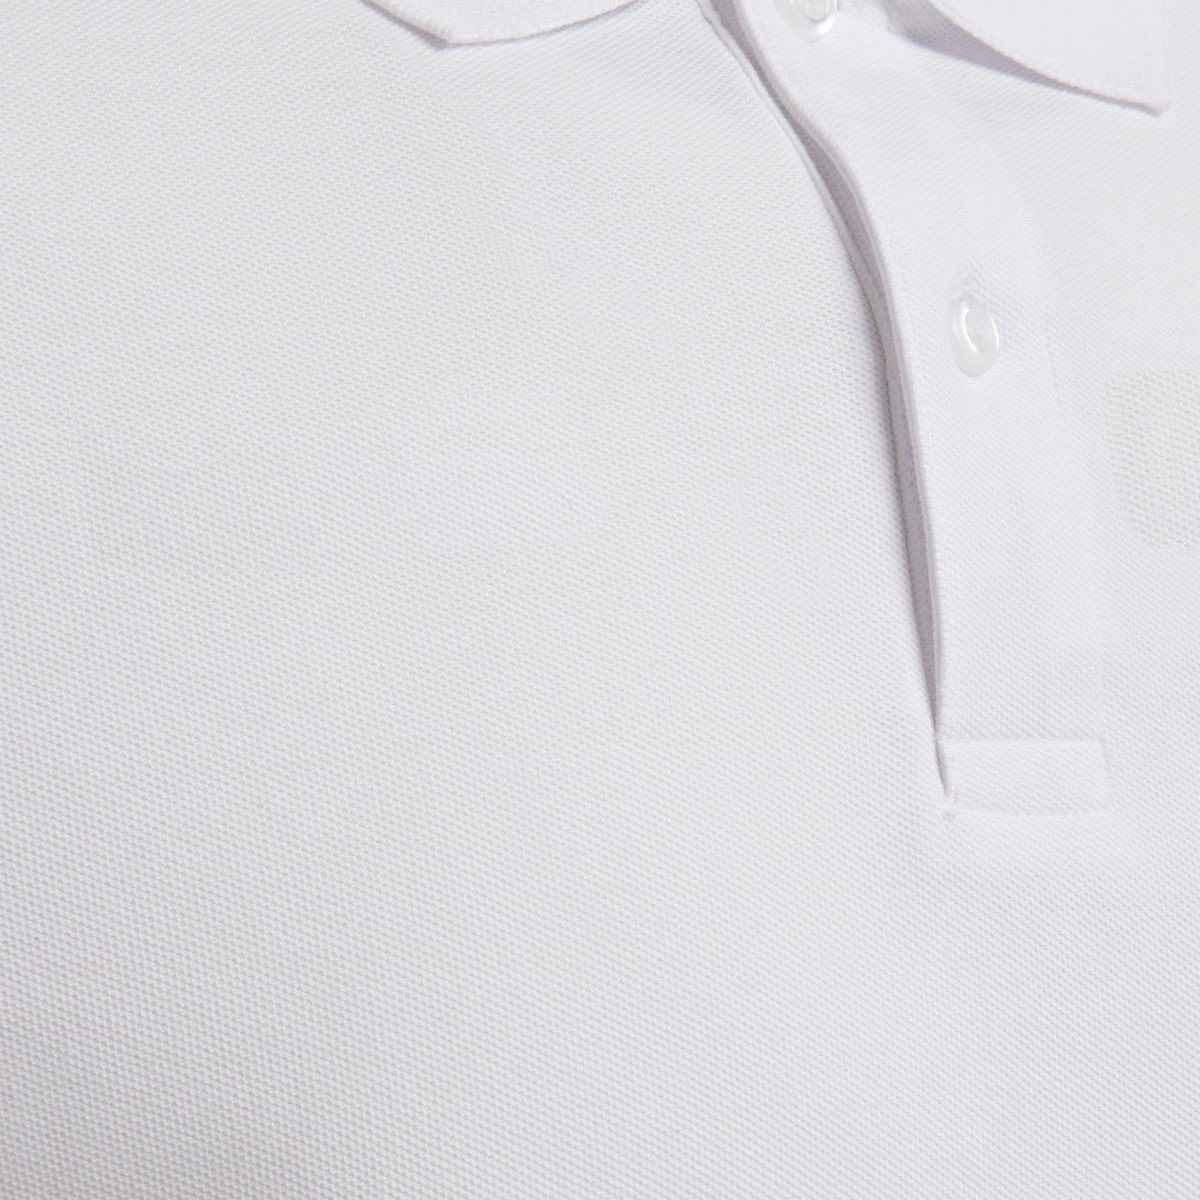 9001 COTTON HMLGOMover Herren POLO Poloshirts T-Shirt White hummel -